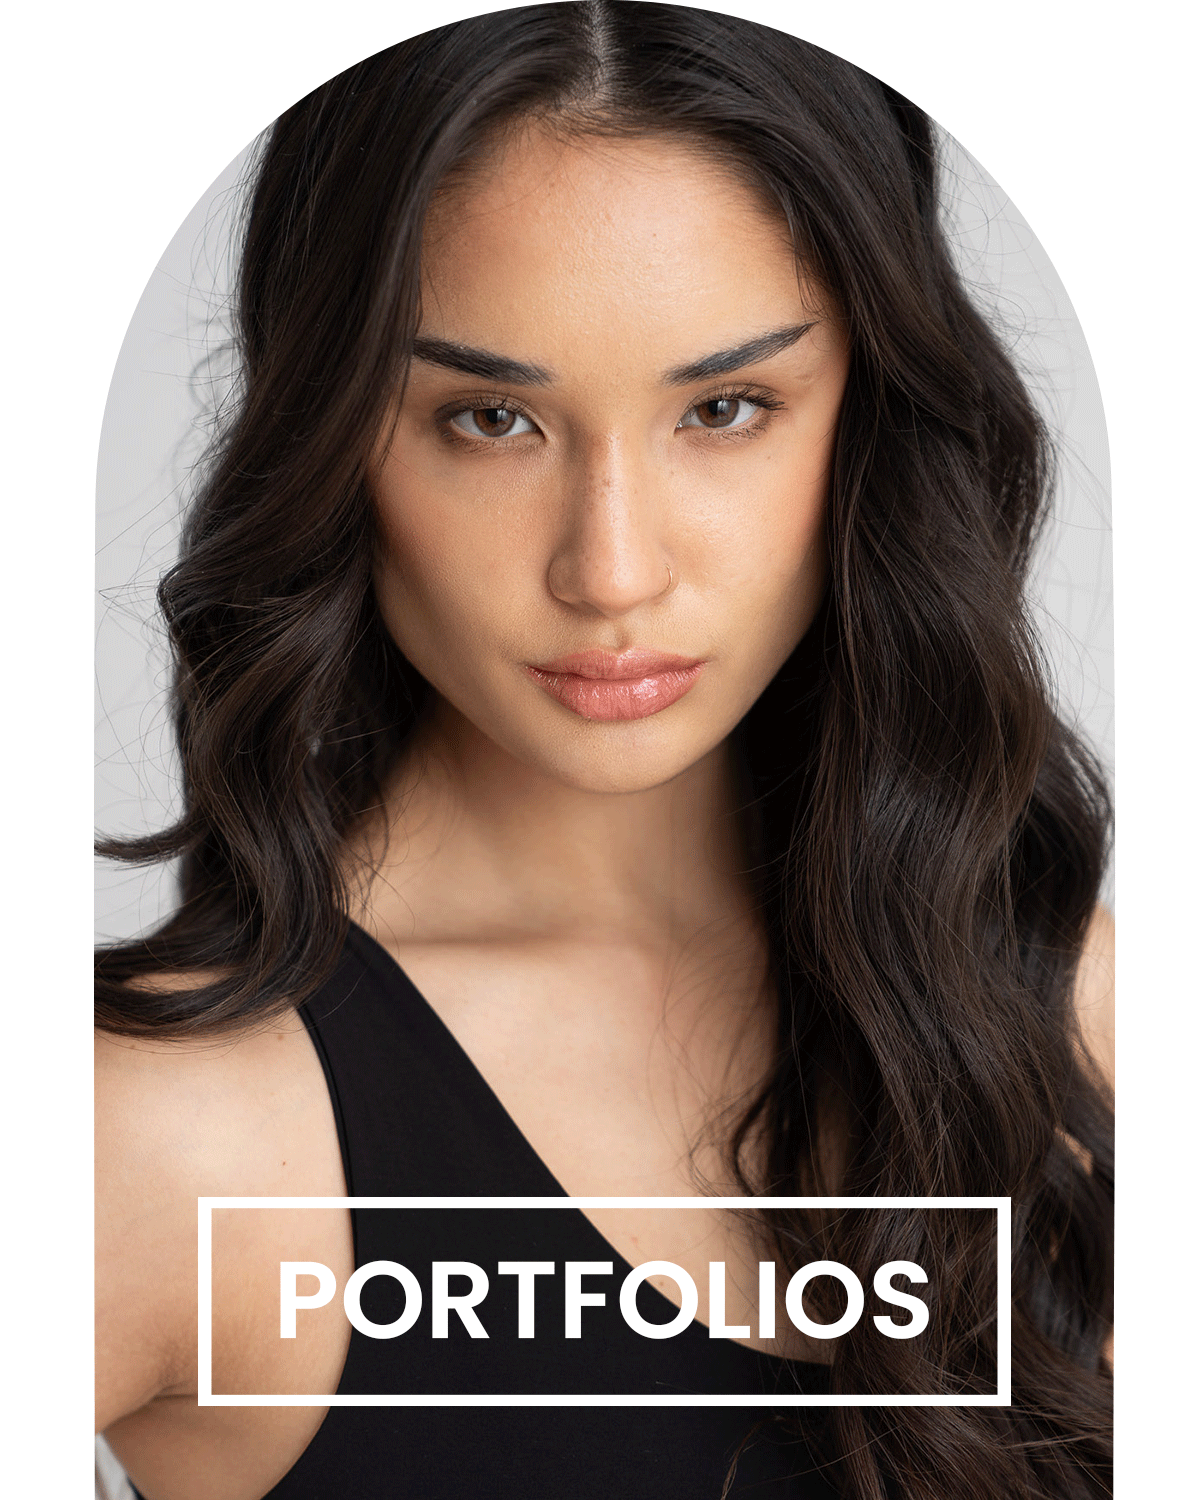 model portfolio photography service saint louis